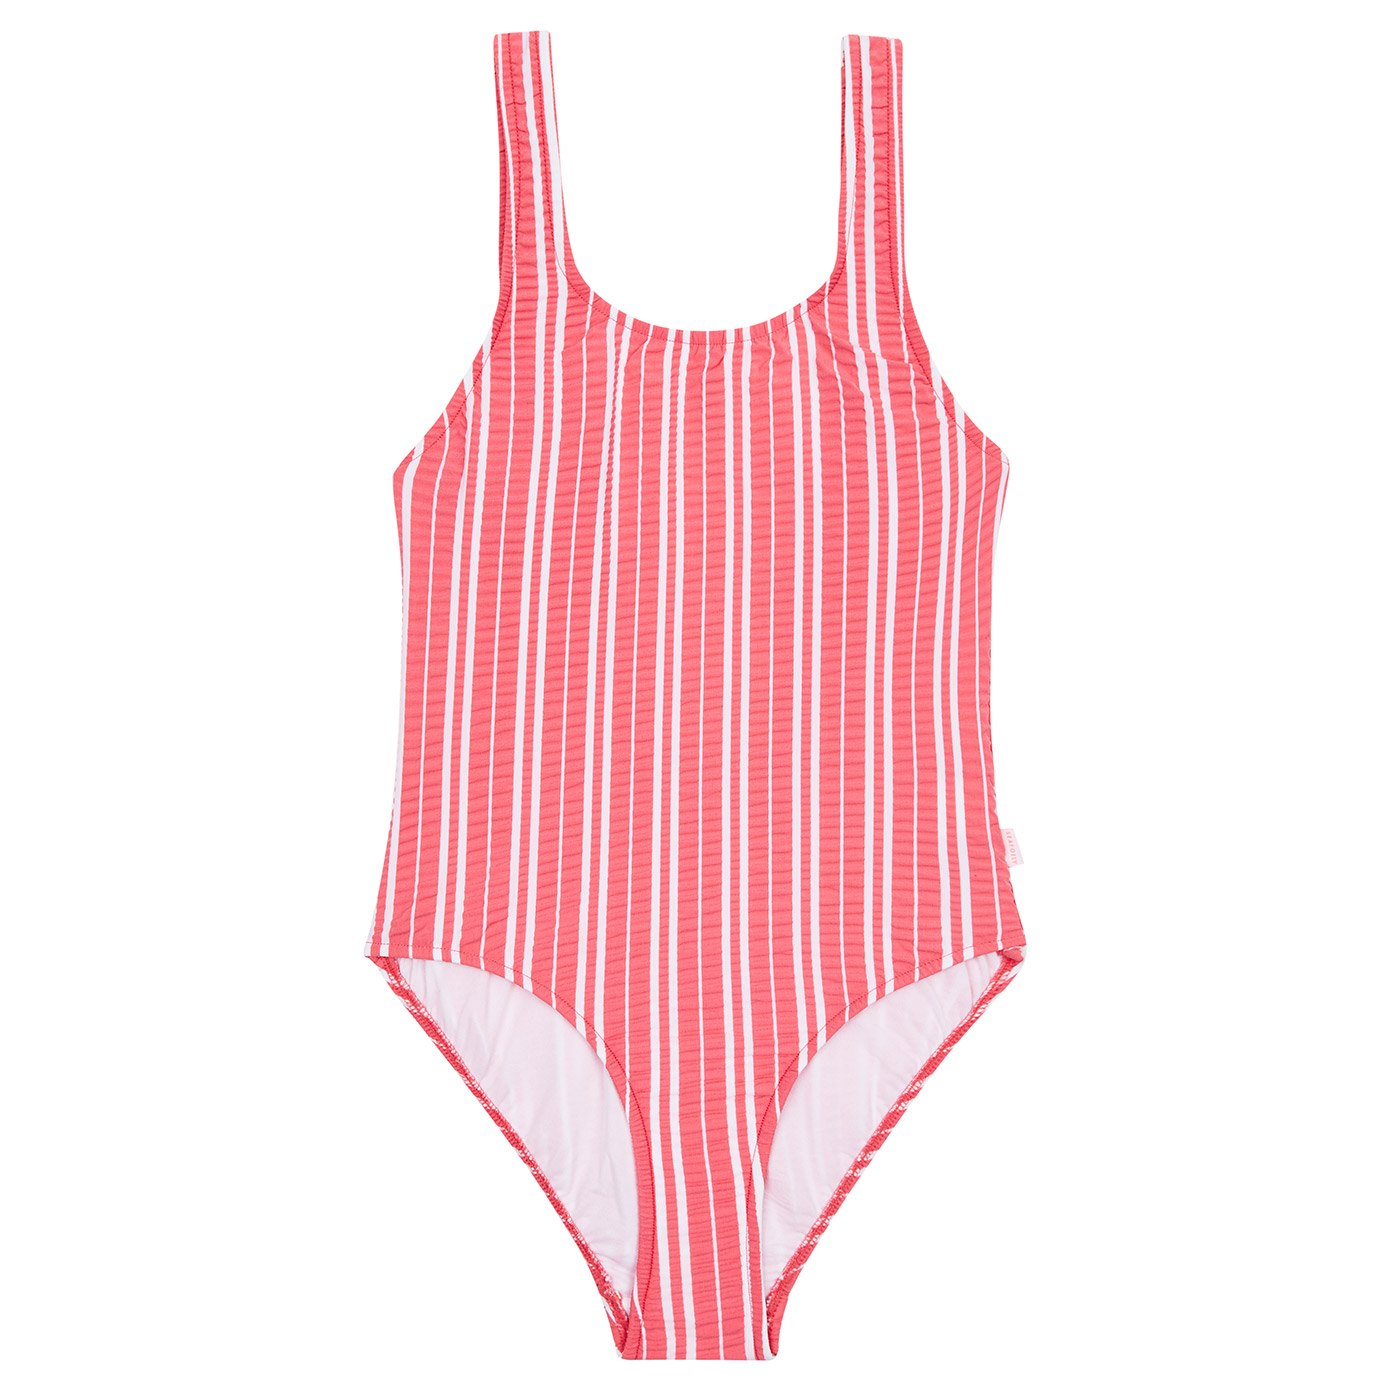 Kids Swimsuit 80's Stripe Red | Milkshakes and Dreams